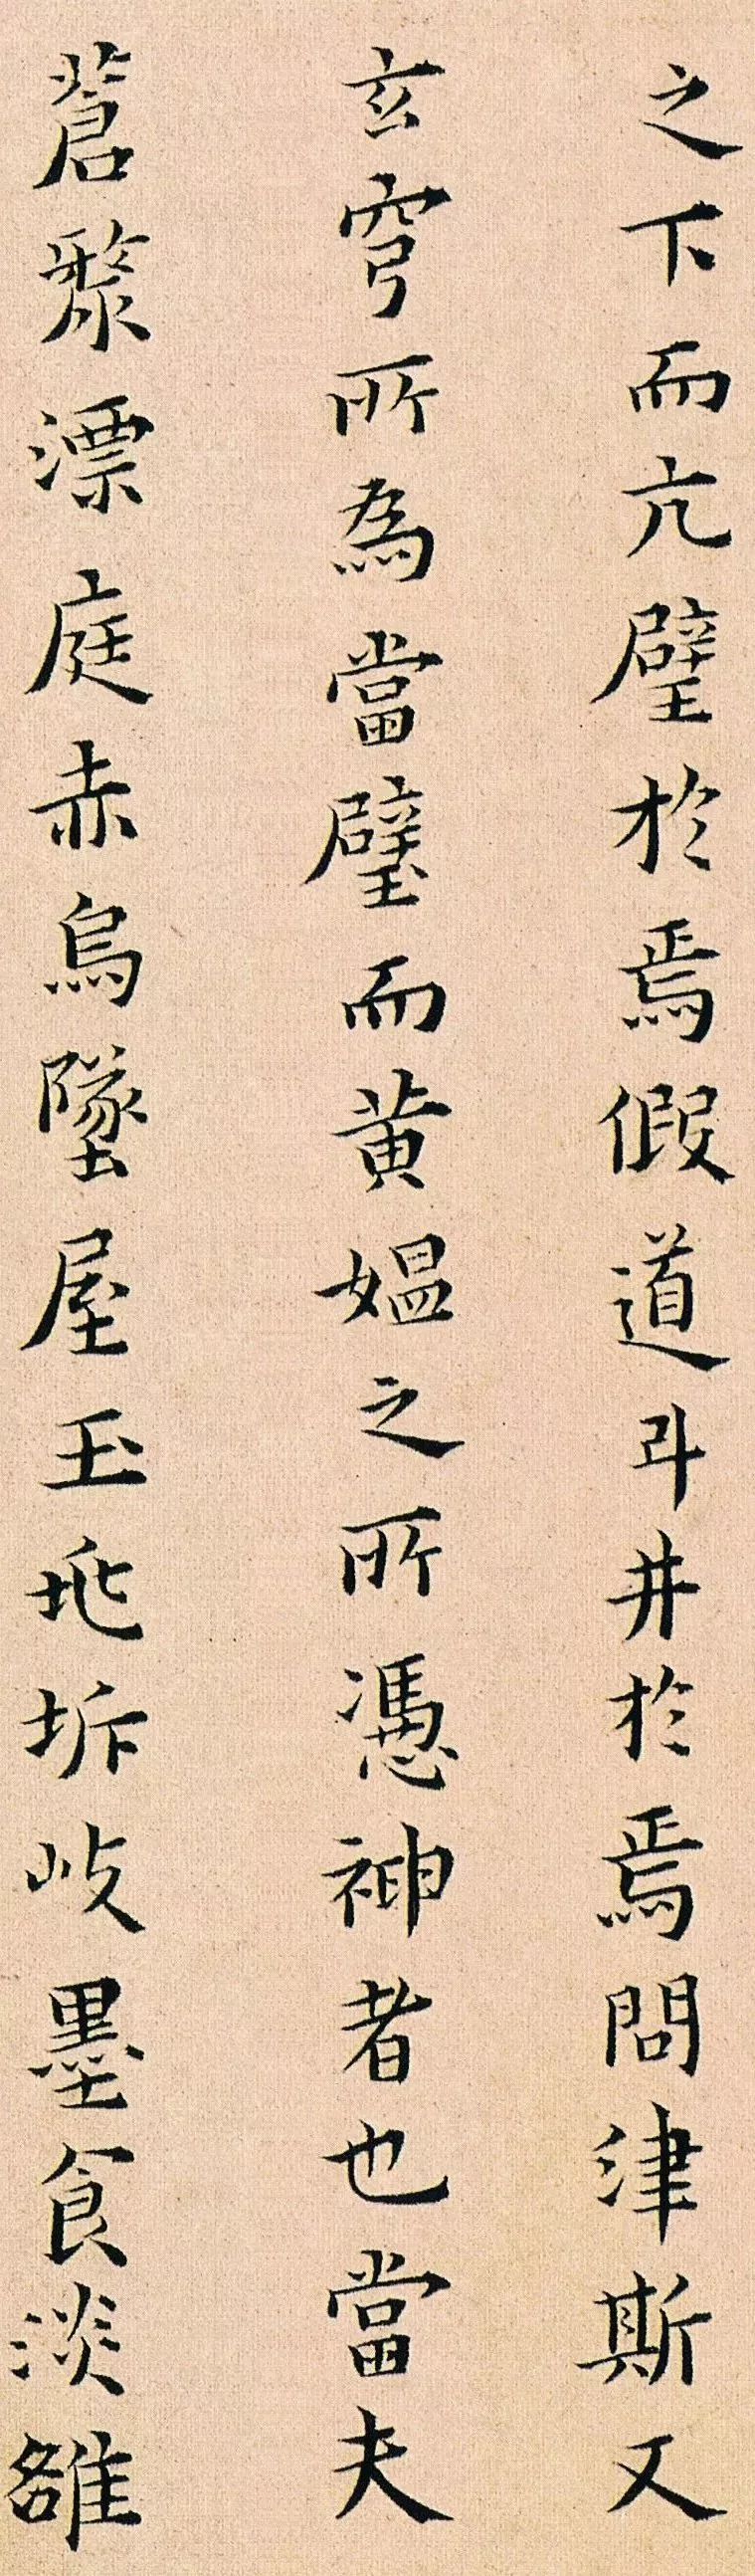 黄道周晚年小楷《孝经颂》，写的是钟繇的风格